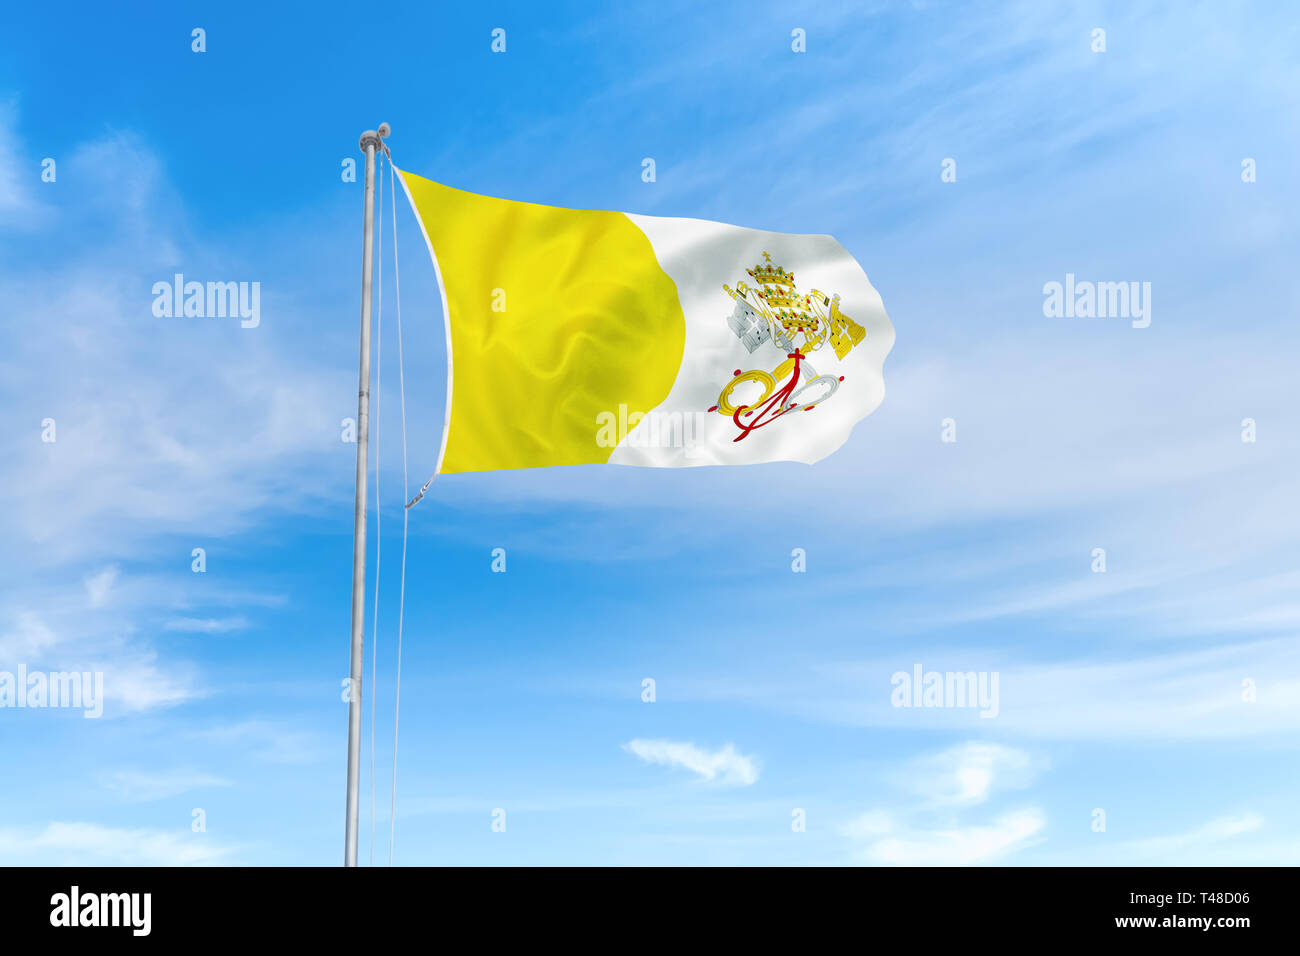 Vatikanstadt Flagge weht im Wind über blauen Himmel Hintergrund Stockfoto